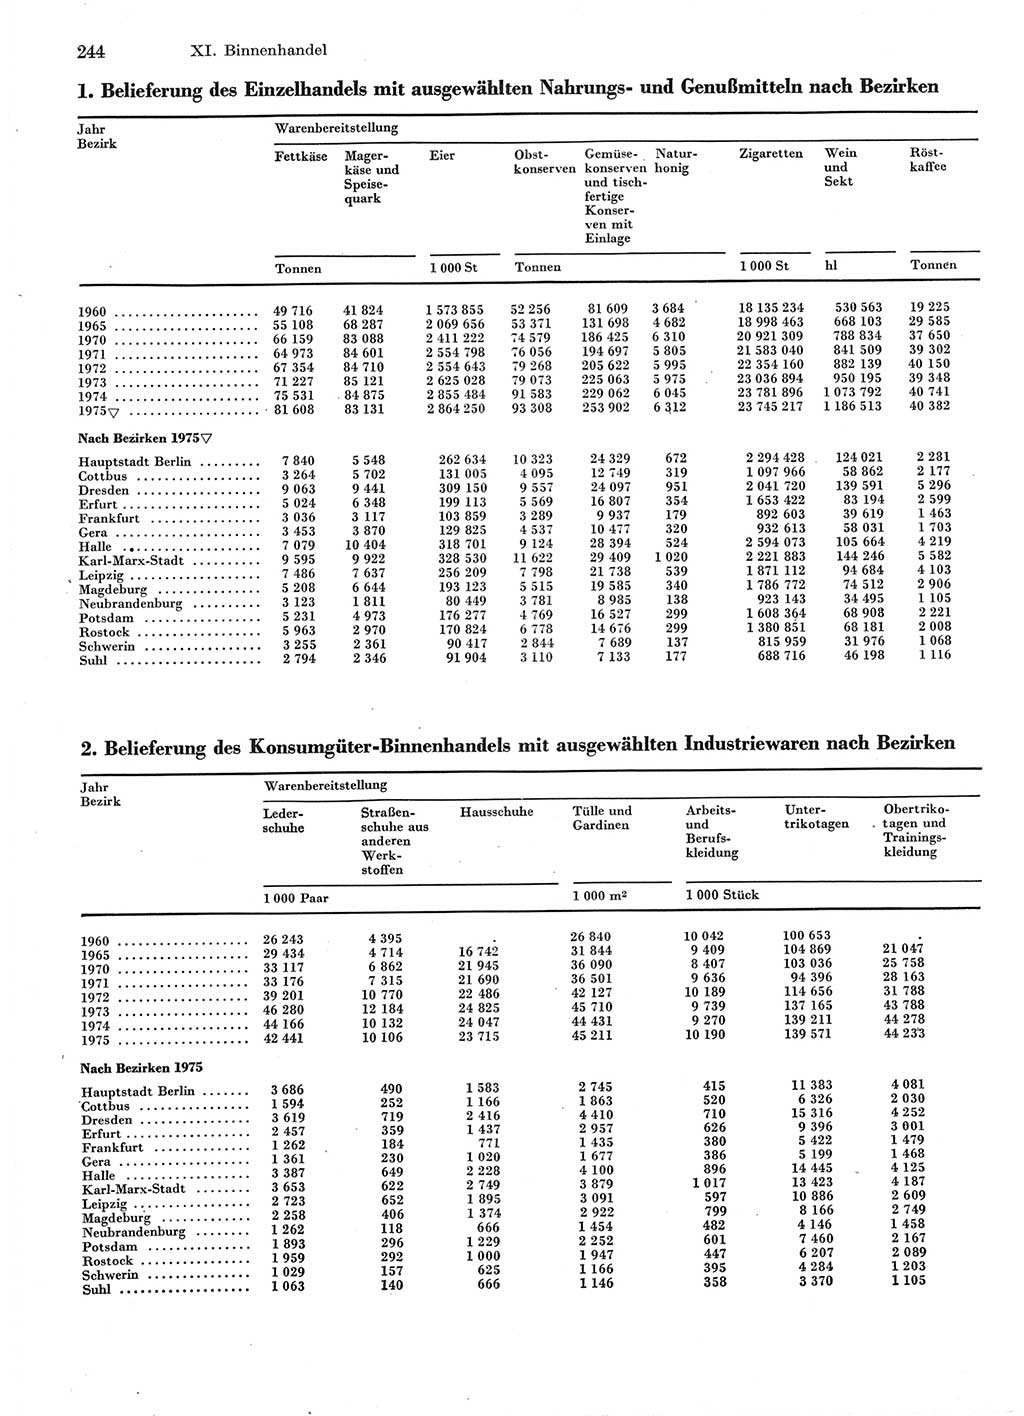 Statistisches Jahrbuch der Deutschen Demokratischen Republik (DDR) 1976, Seite 244 (Stat. Jb. DDR 1976, S. 244)